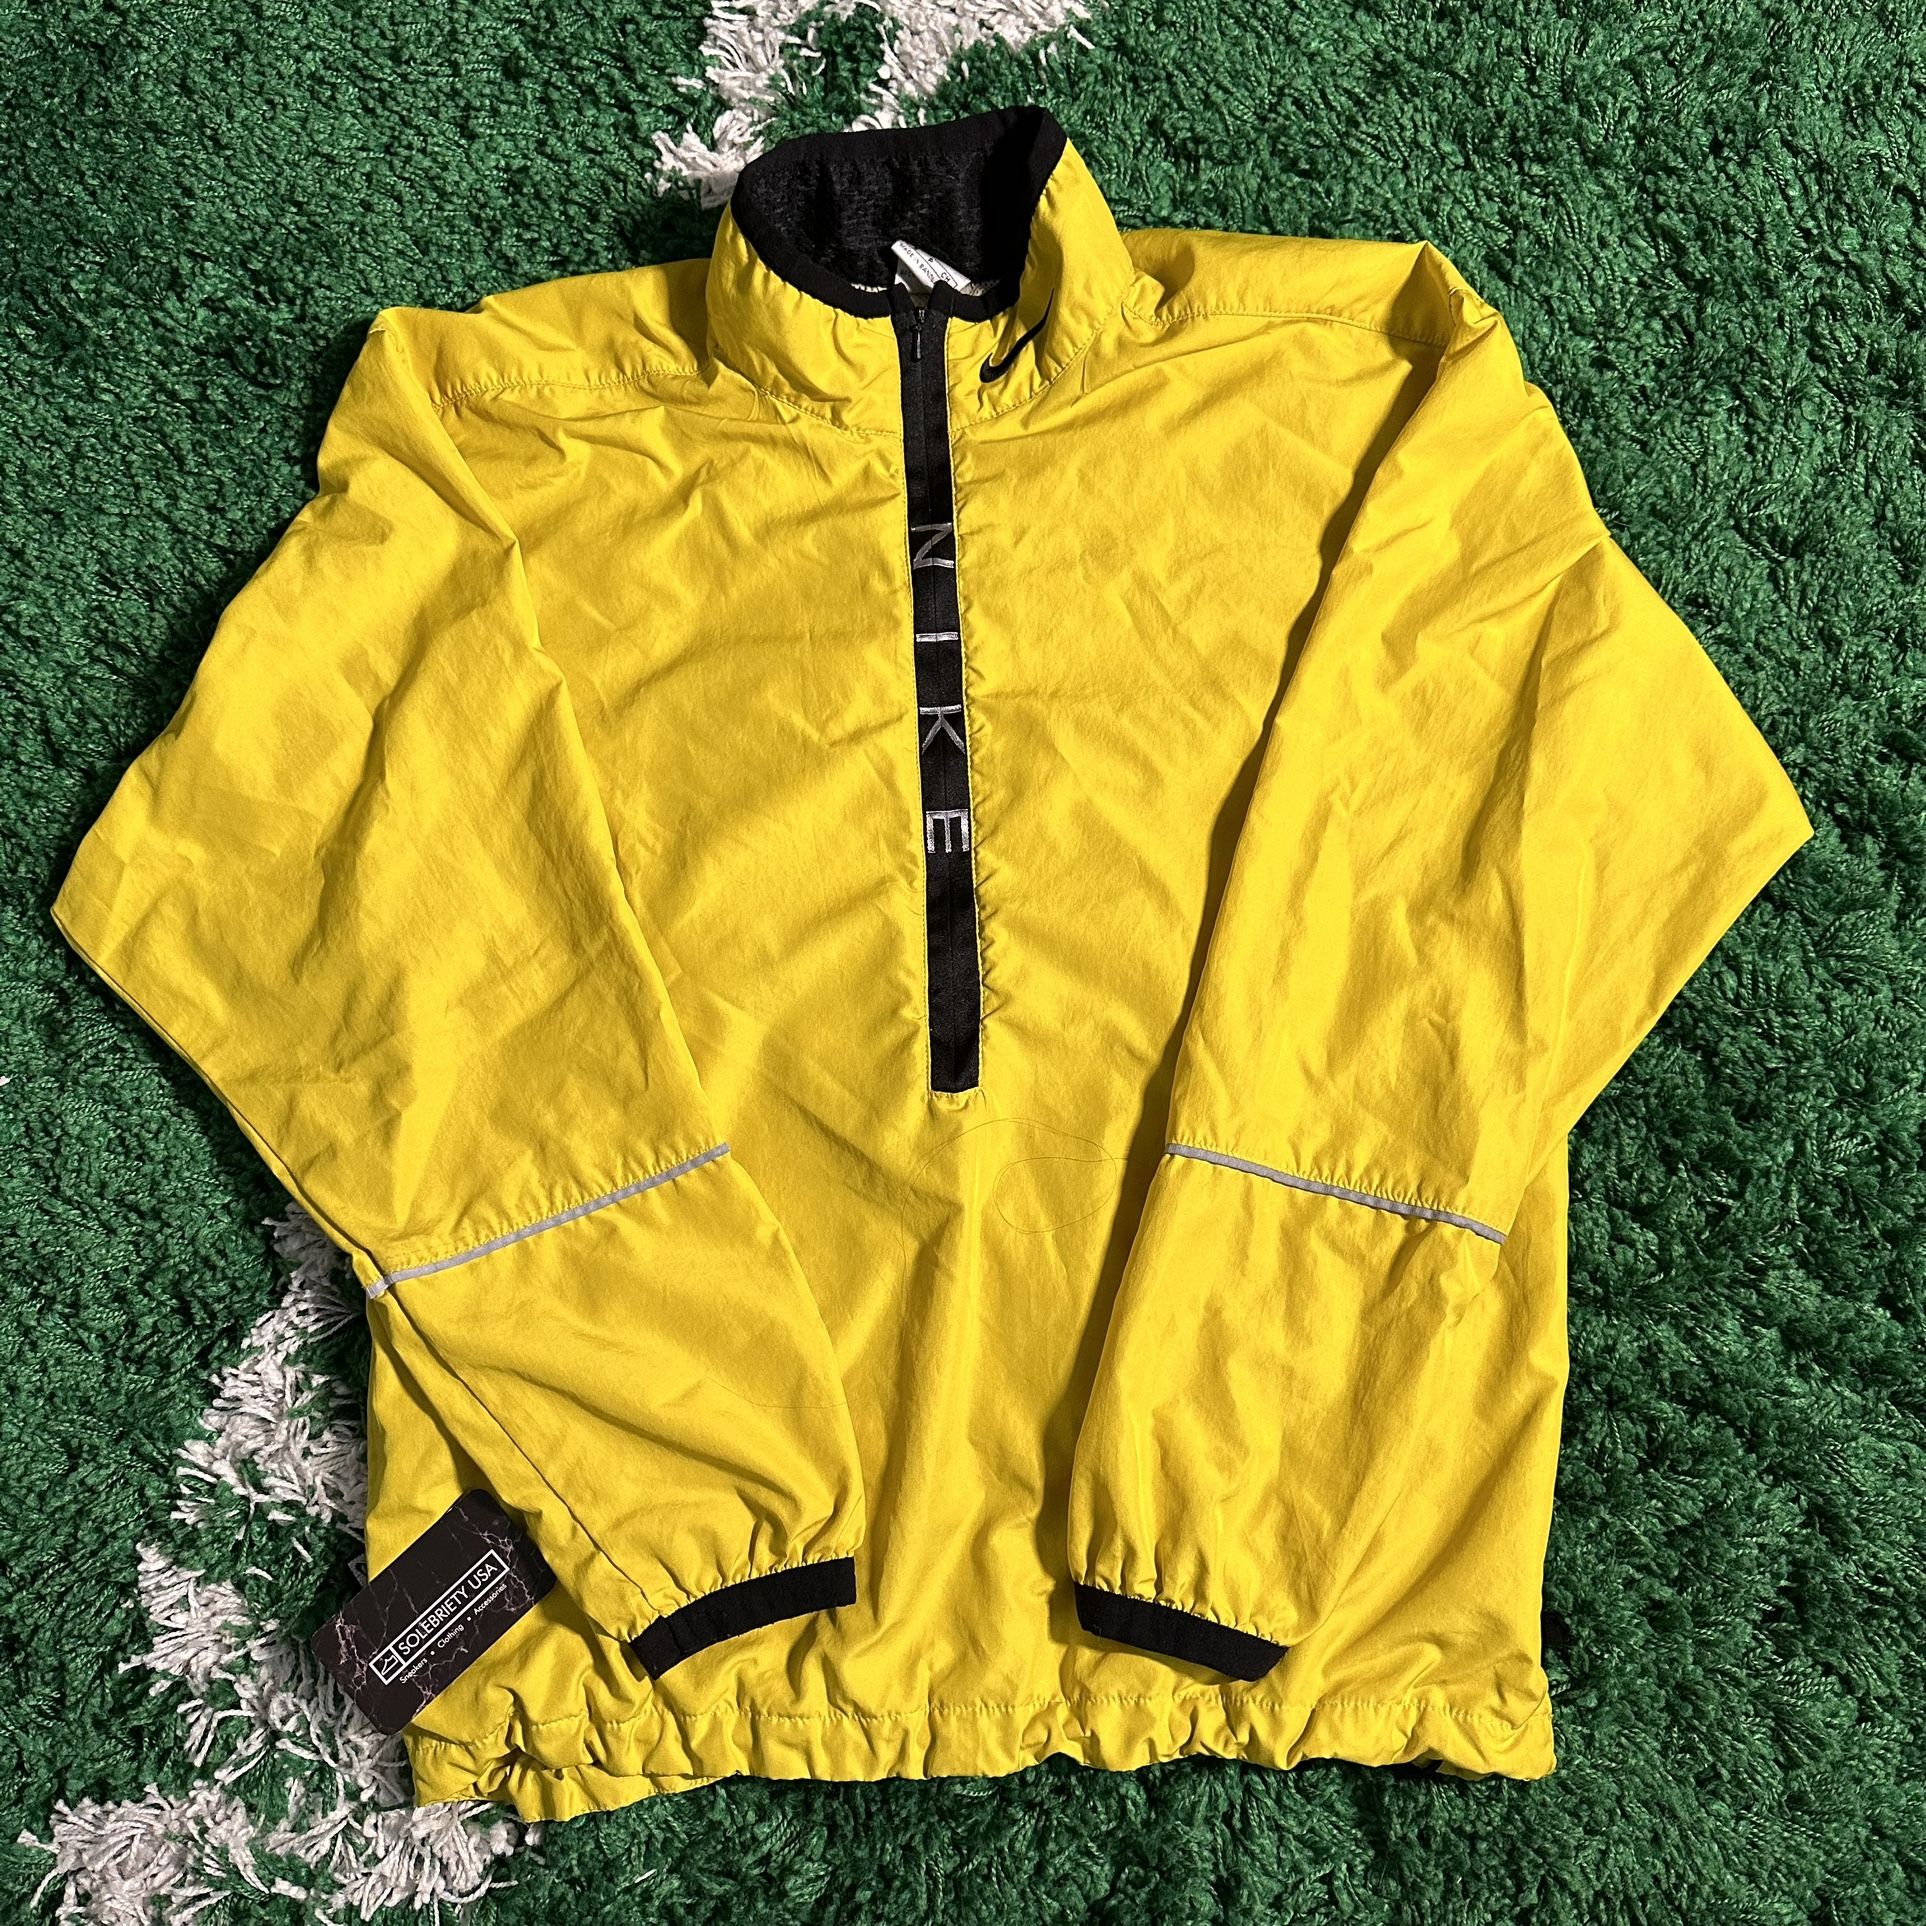 Vintage Nike Half Zip Spellout Jacket